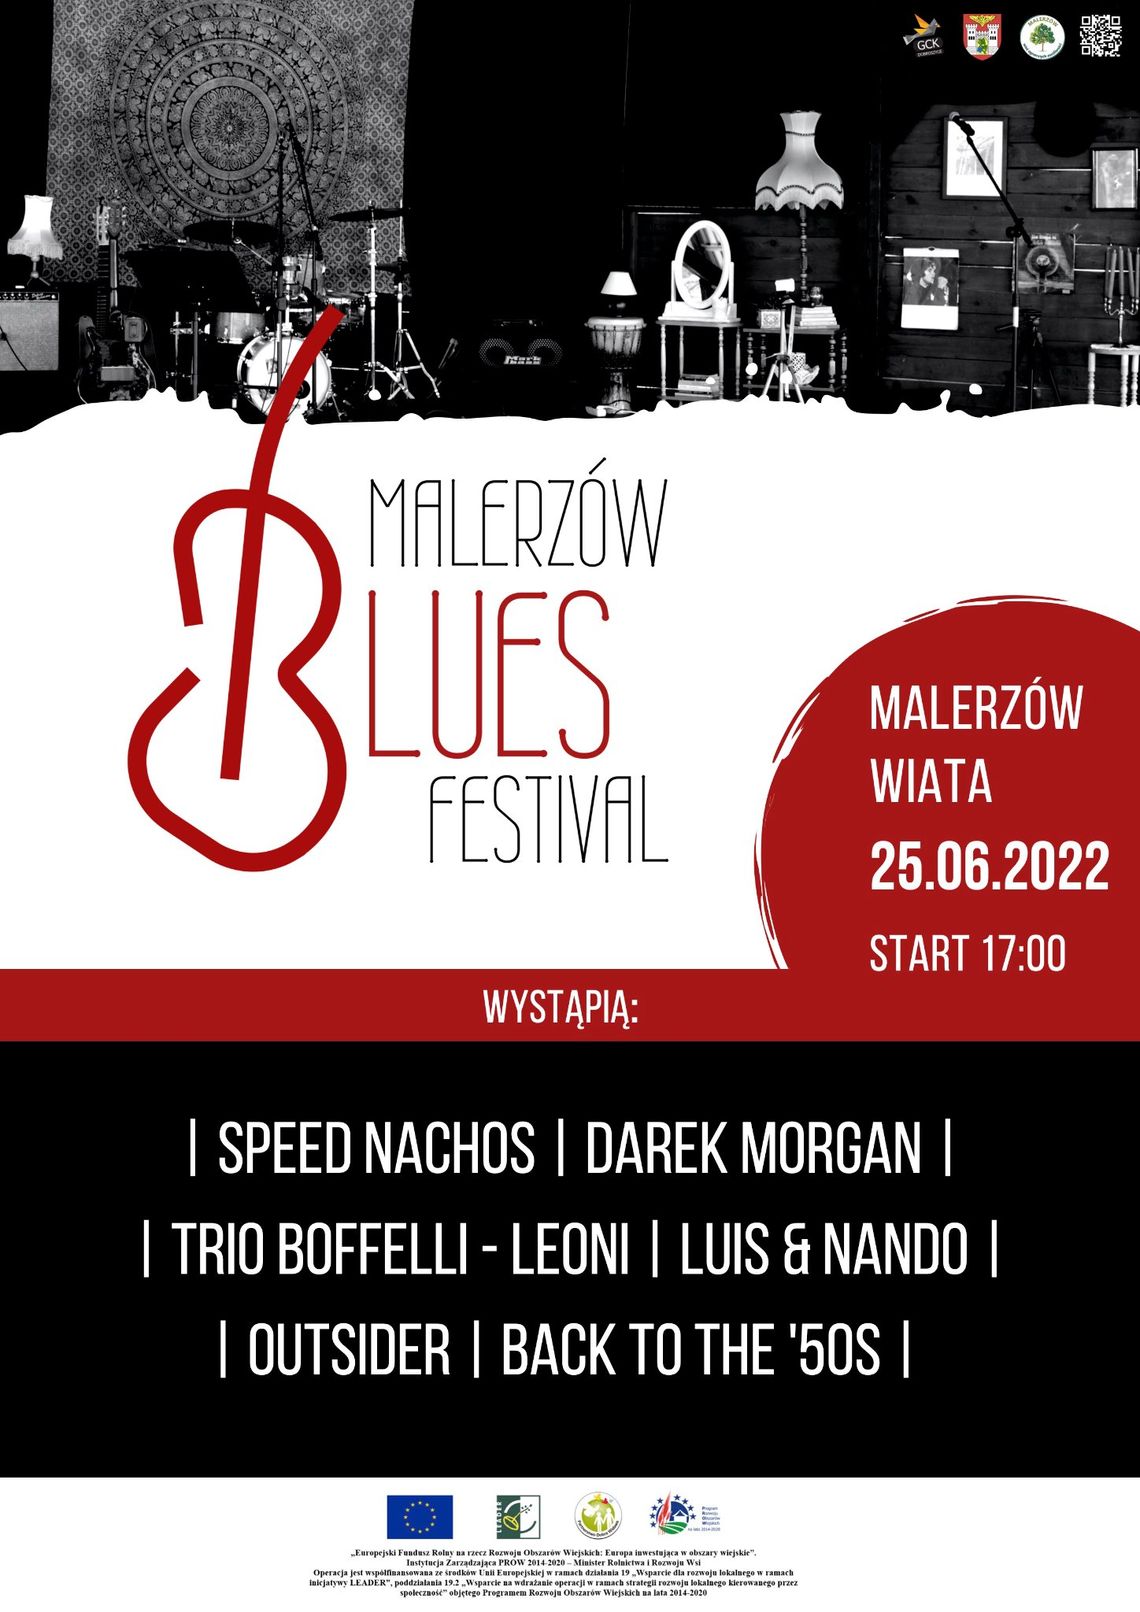 Malerzów Blues Festival 2022 już za dwa tygodnie